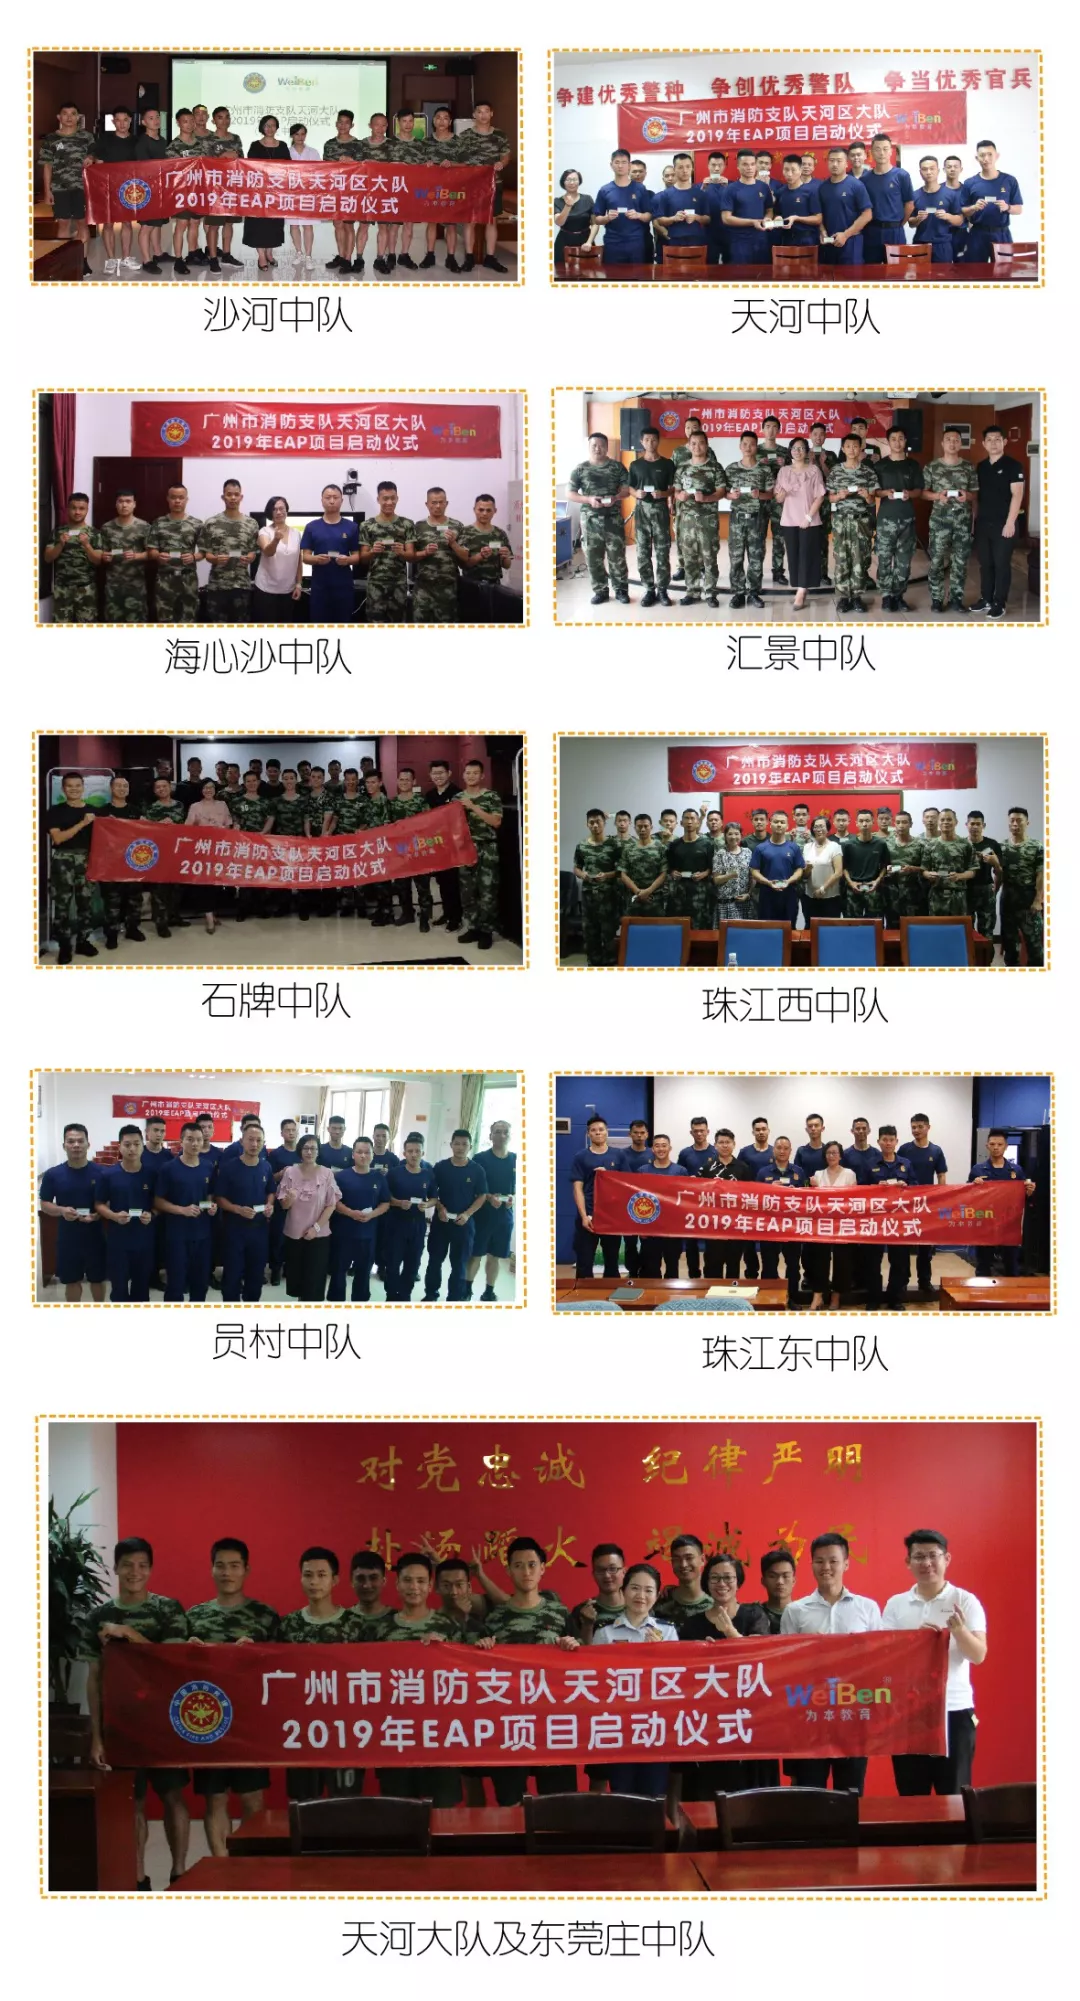 为本教研EAP服务走进广州市消防支队天河区大队